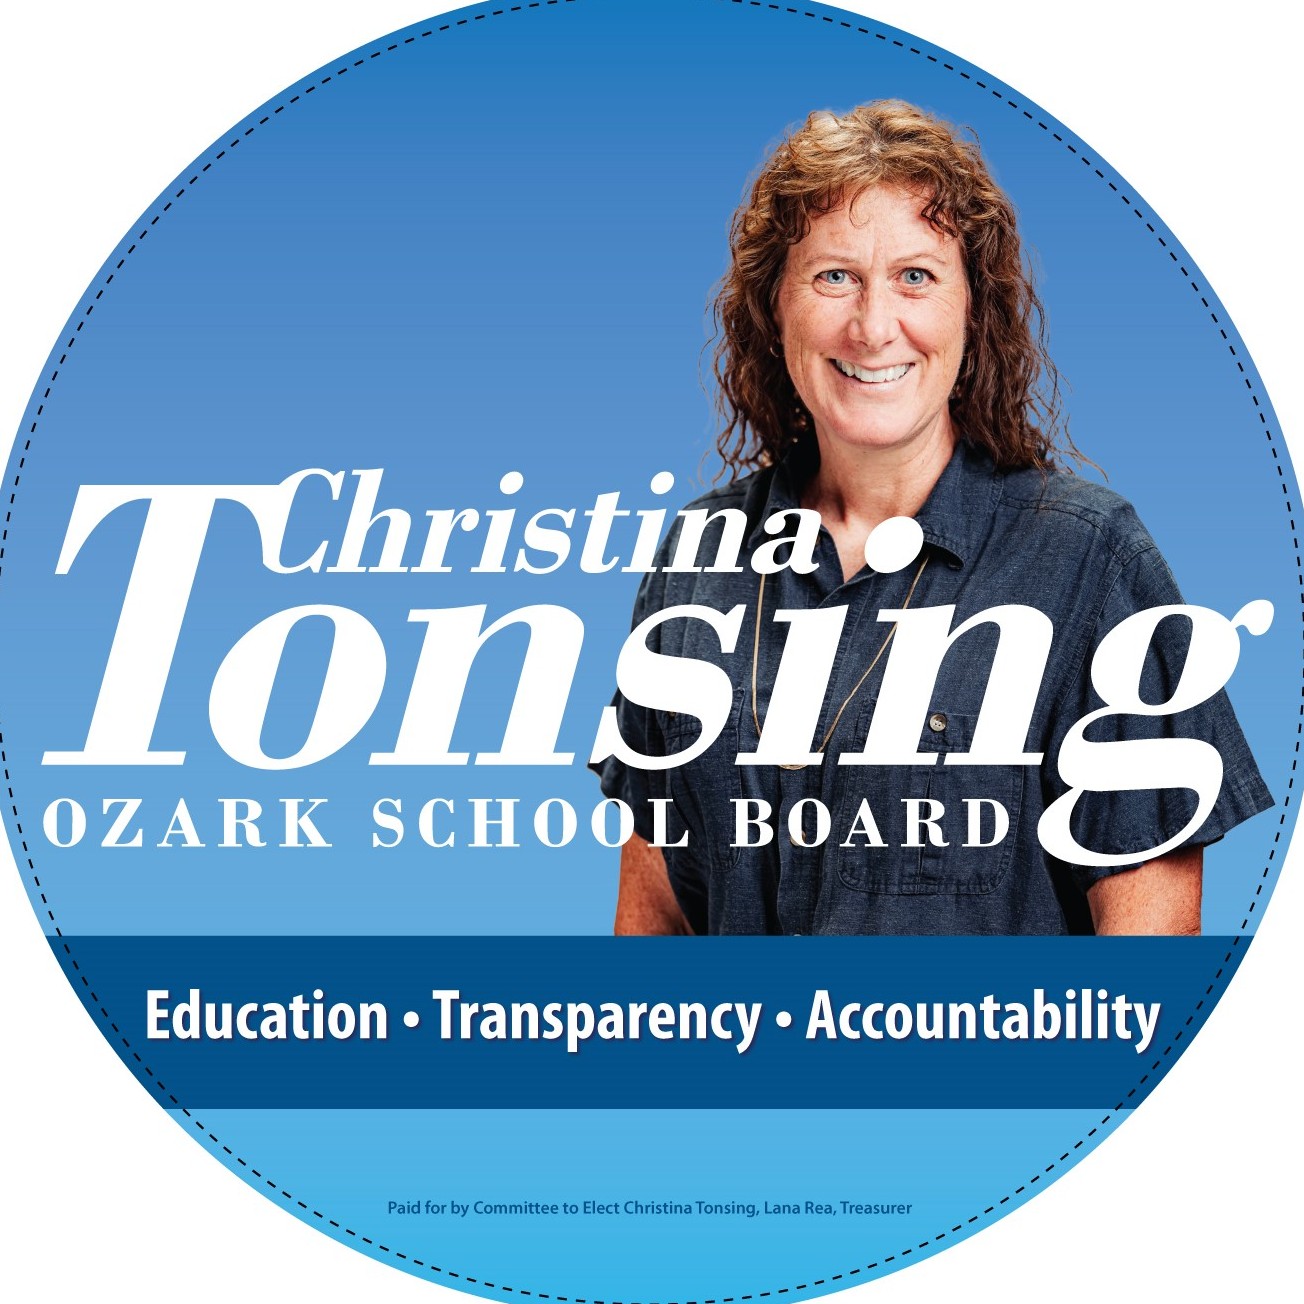 Ozark School Board shames one of their own!